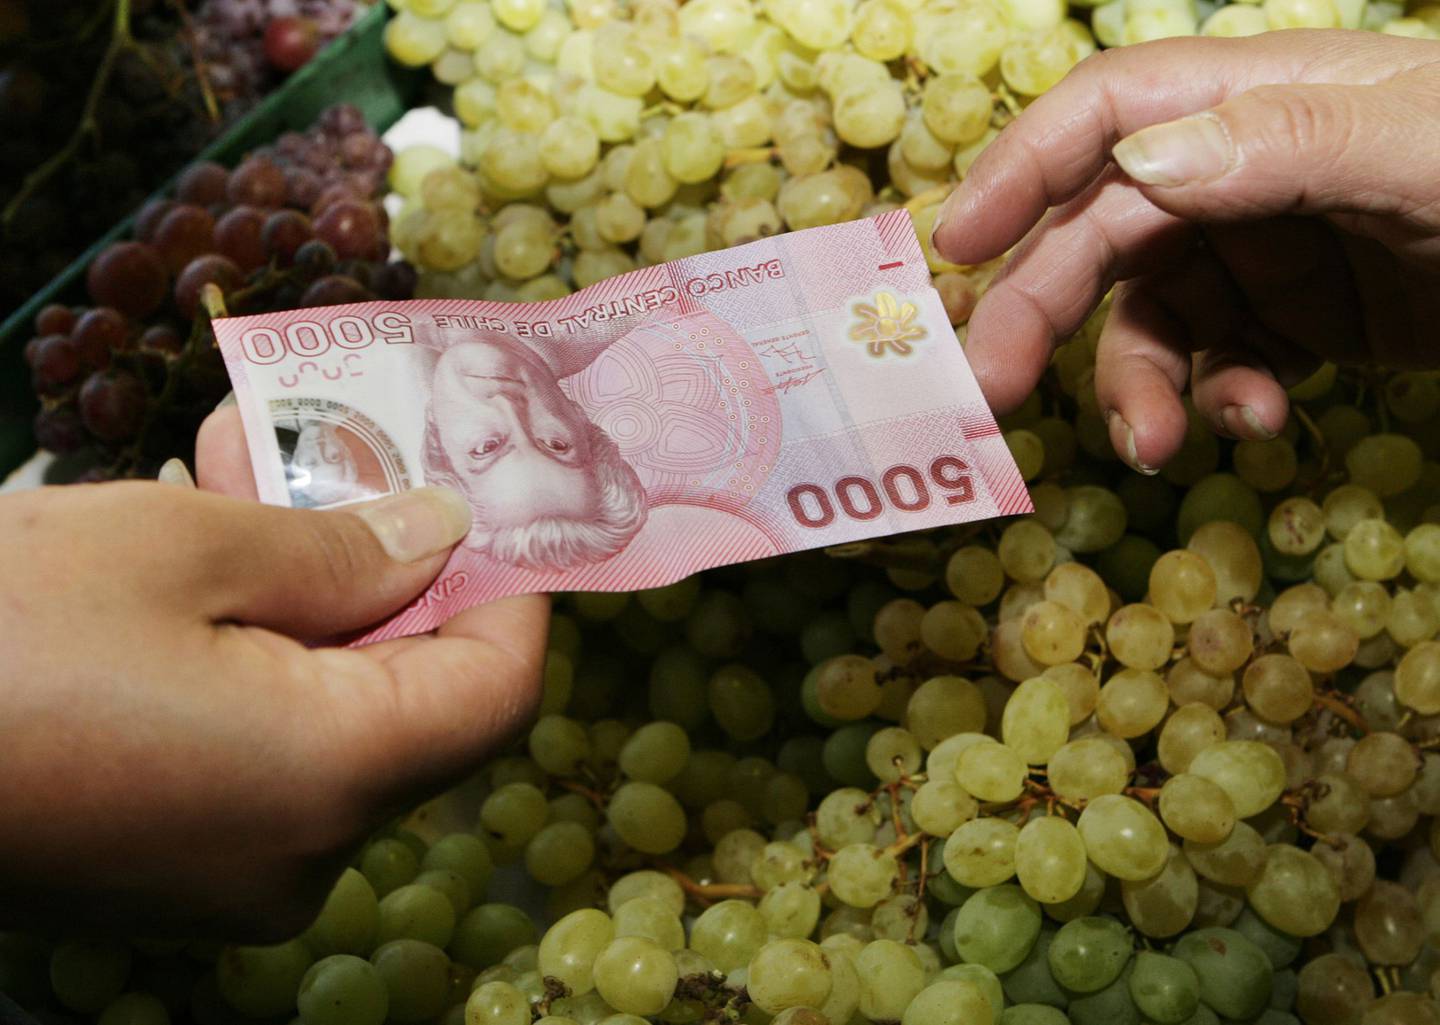 Una persona entrega un billete de 5 mil pesos chilenos. Fotógrafo: Morten Andersen/Bloomberg